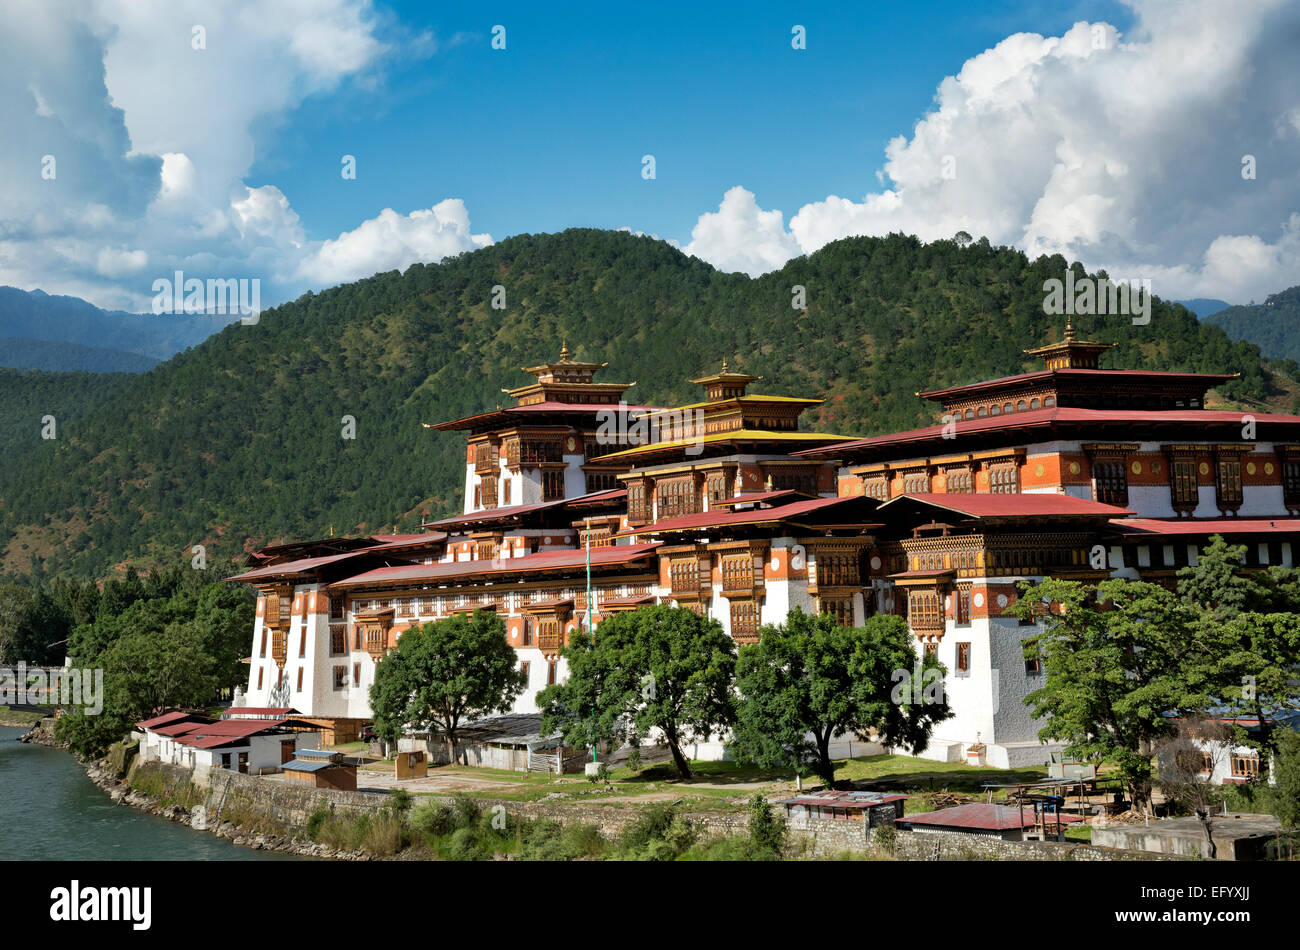 Bhoutan - Punakha Dzong (monastère) et les bureaux du gouvernement, a été la capitale et siège du gouvernement jusqu'au milieu des années 50. Banque D'Images